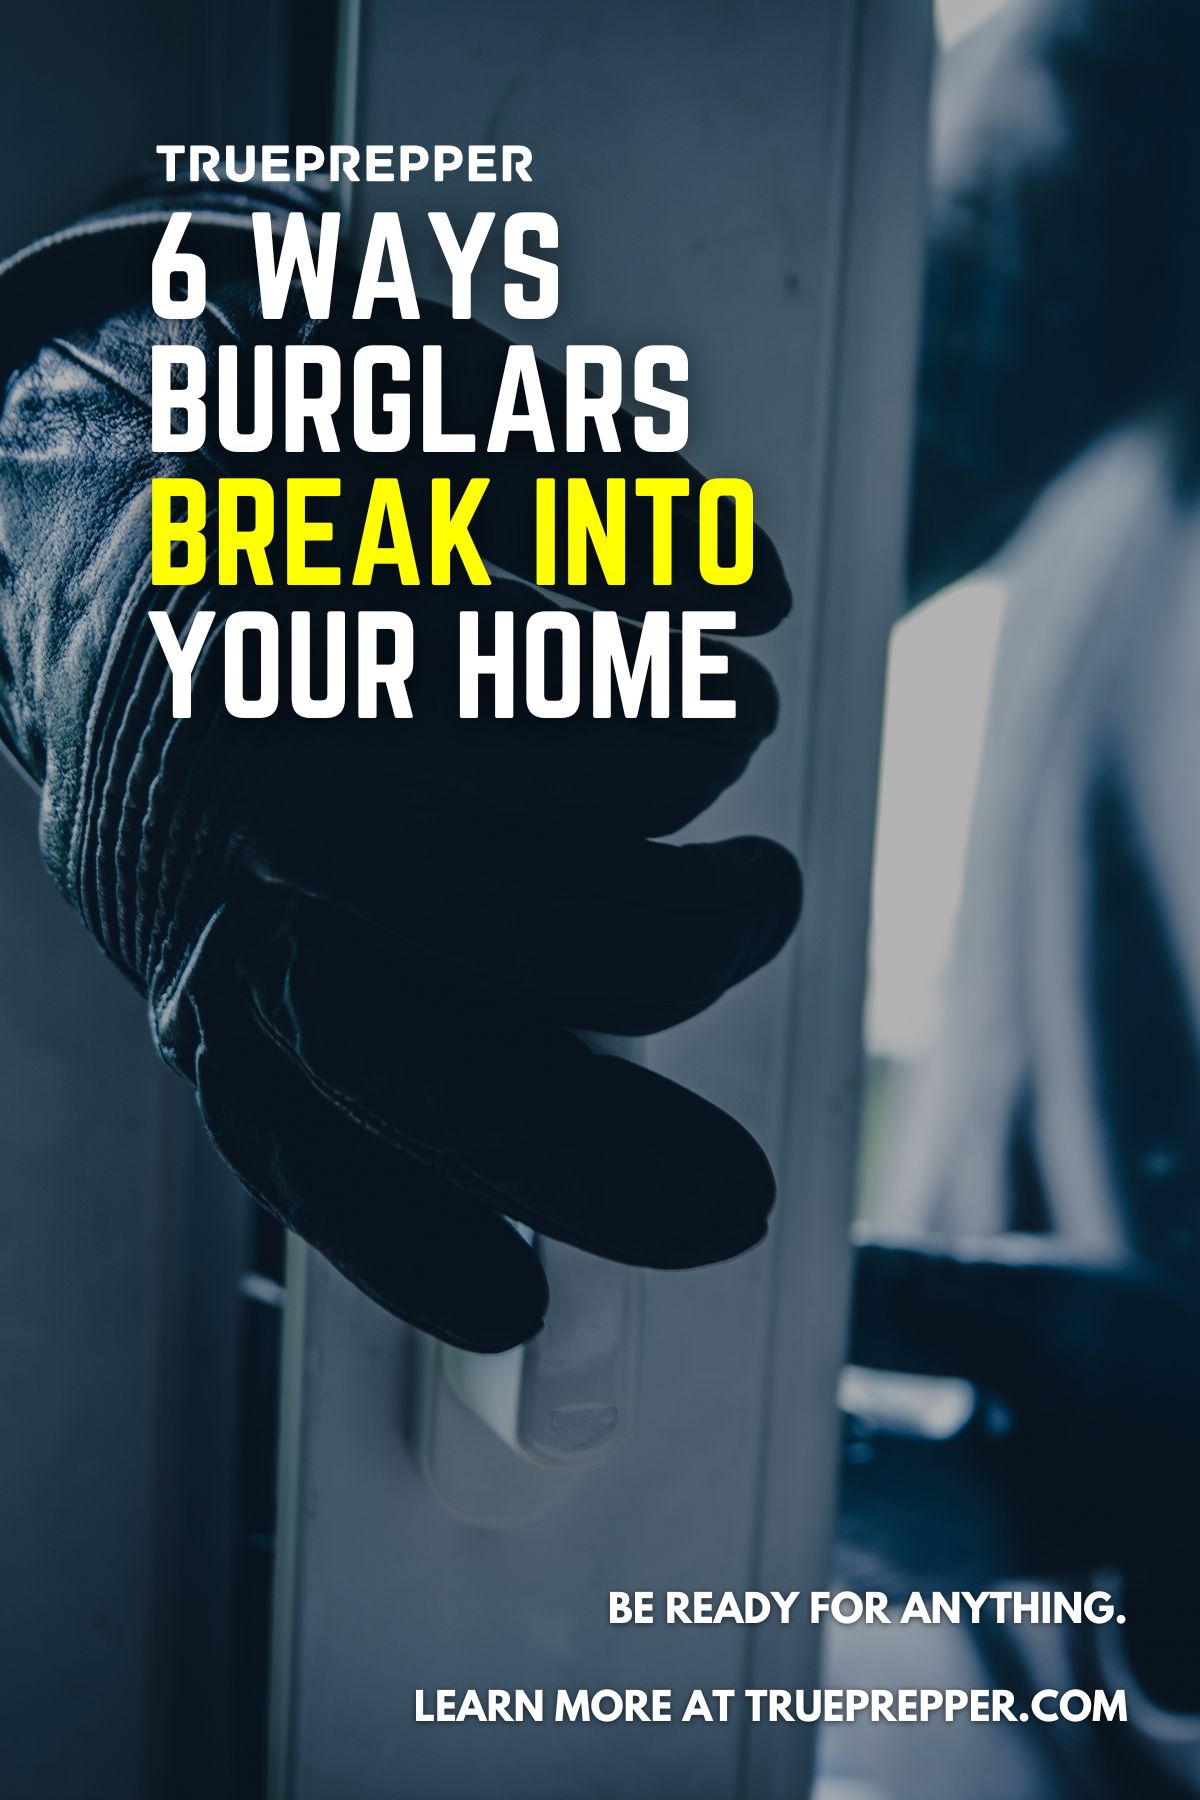 6 Ways Burglars Break into your Home